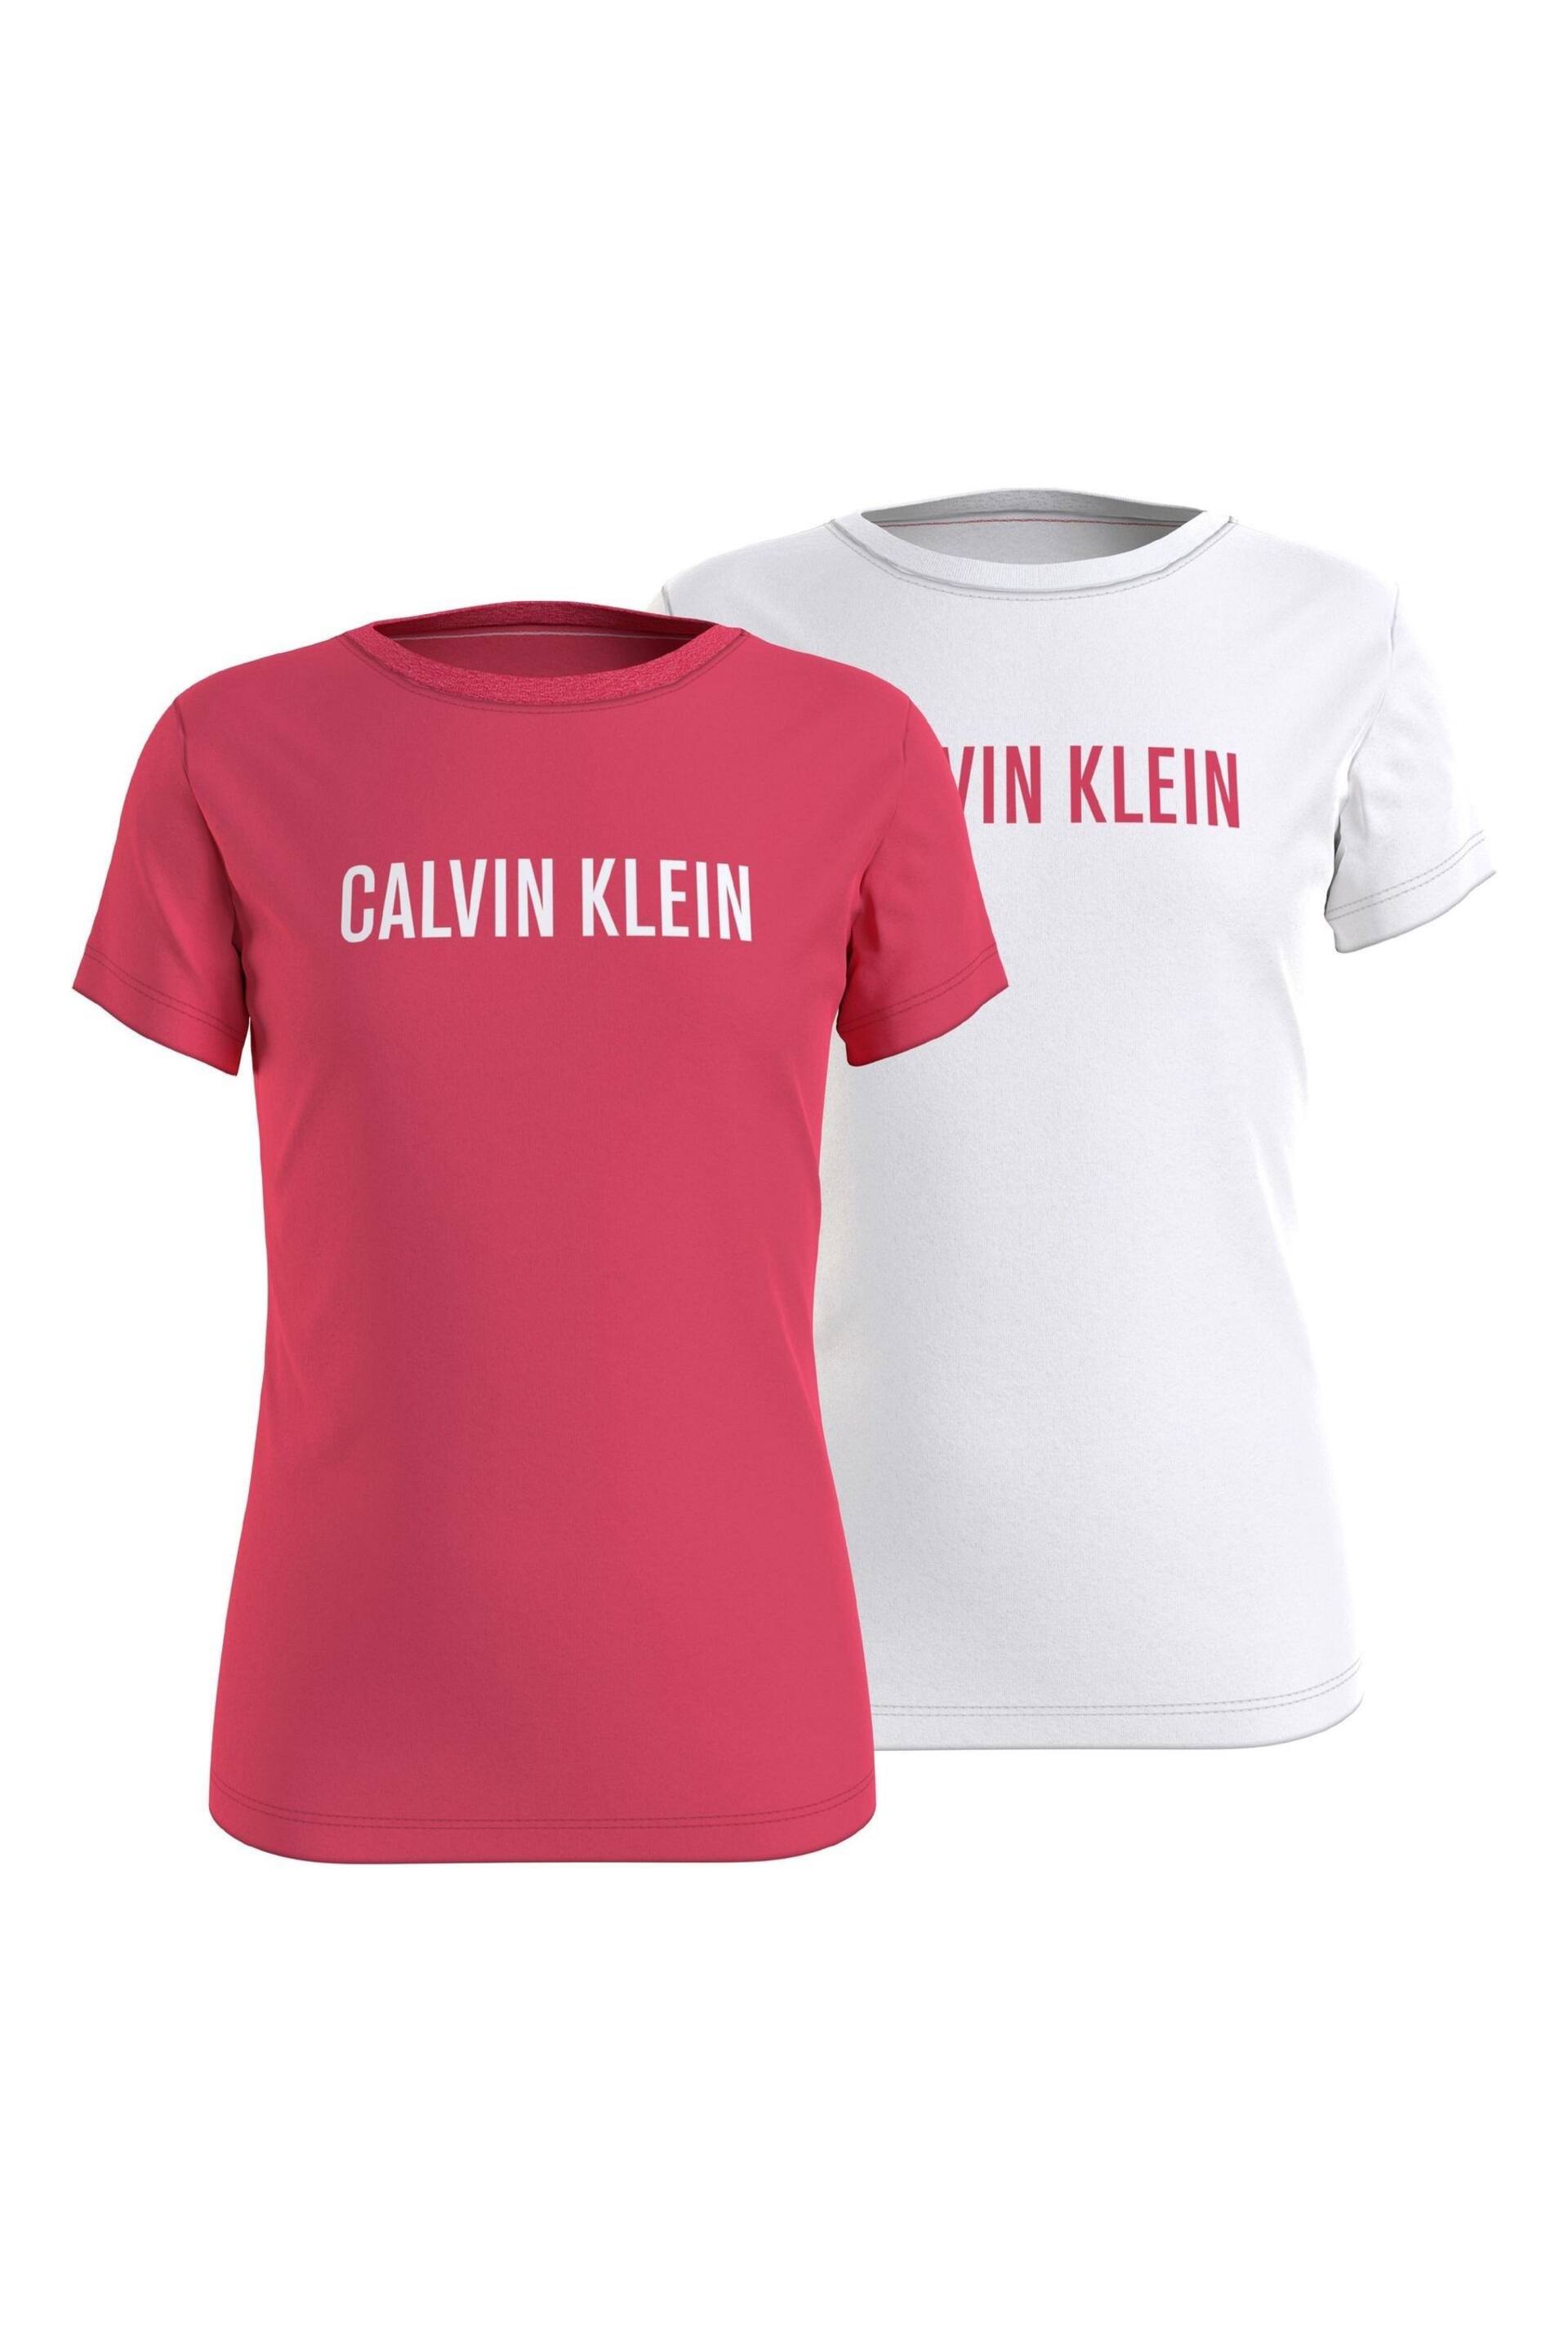 Calvin Klein Pink Slogan T-Shirts 2 Pack - Image 1 of 3